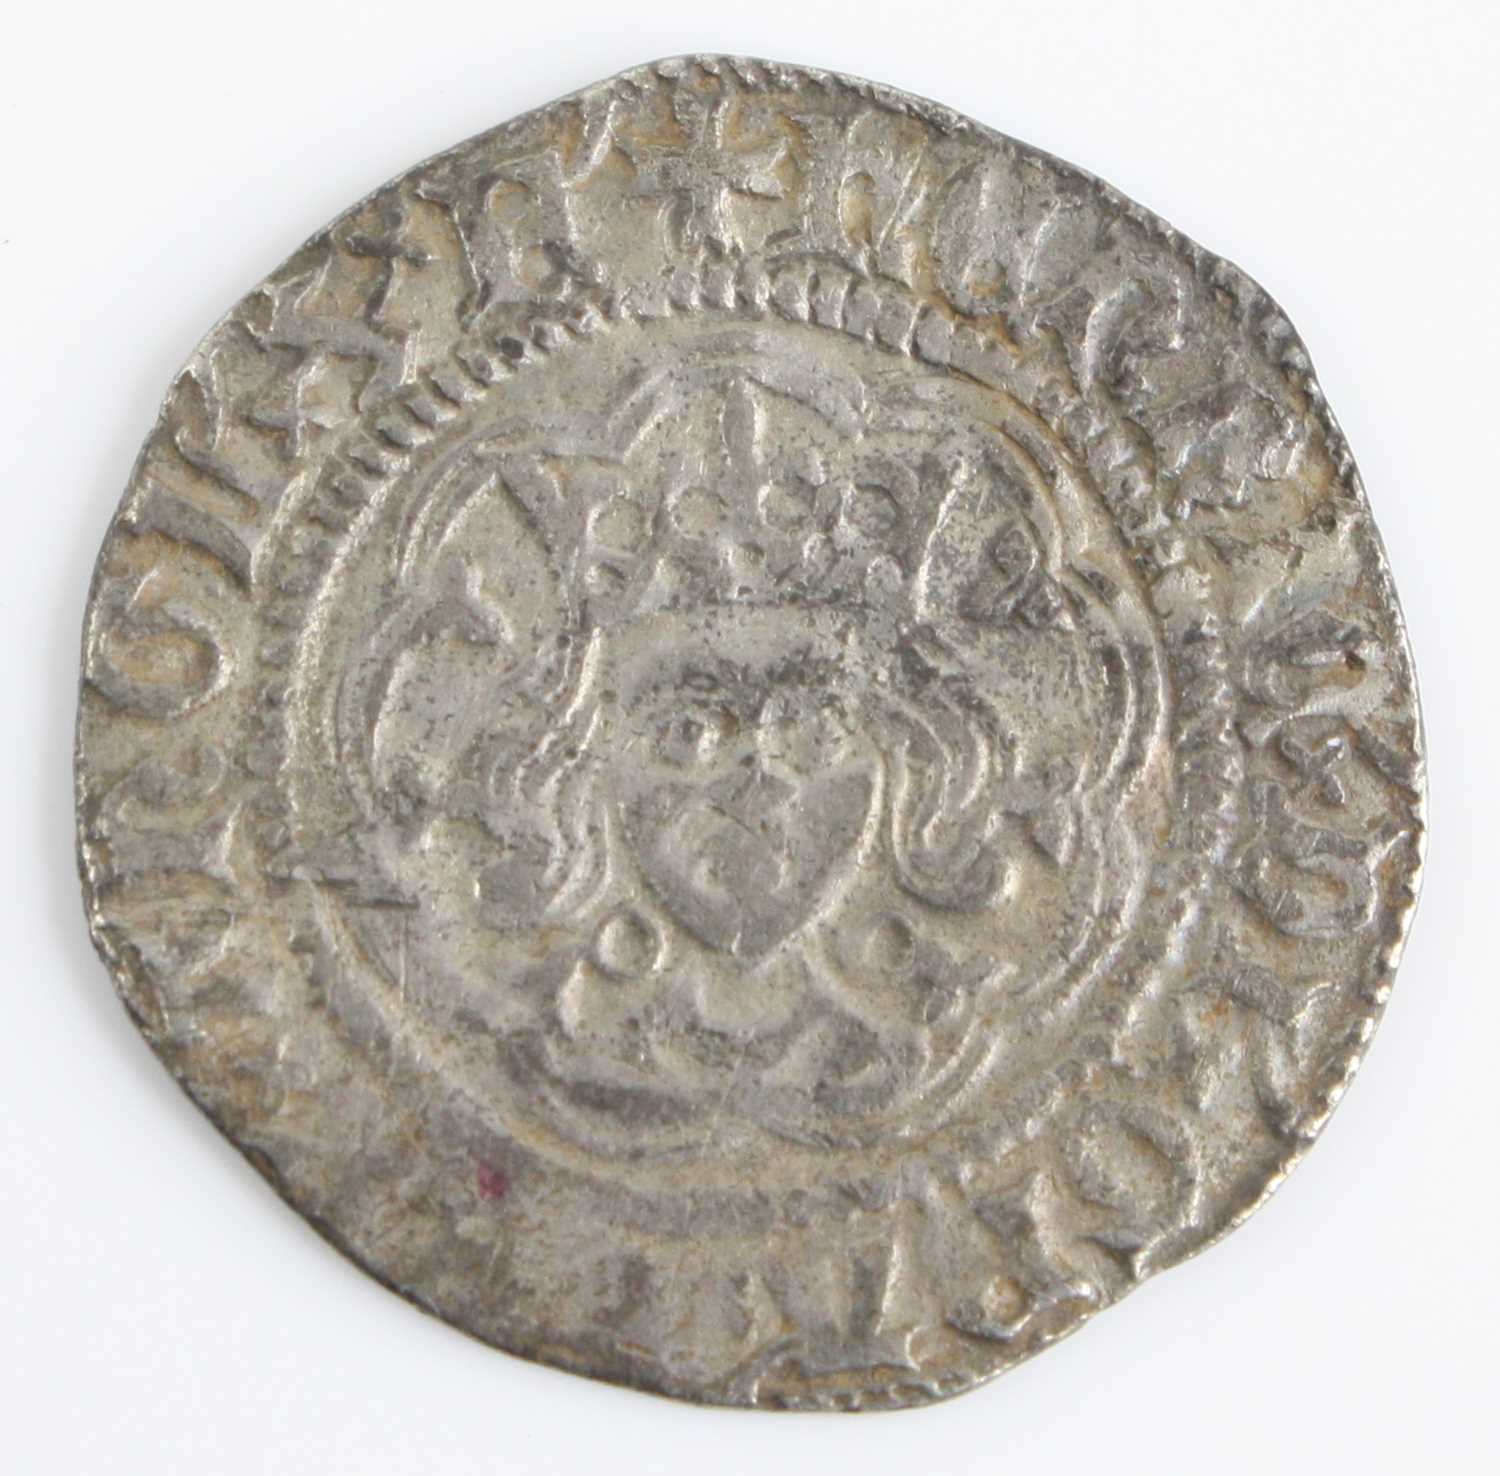 England, Henry VI (1422-1461) half groat, obv: crowned facing portrait of King Henry VI, legend